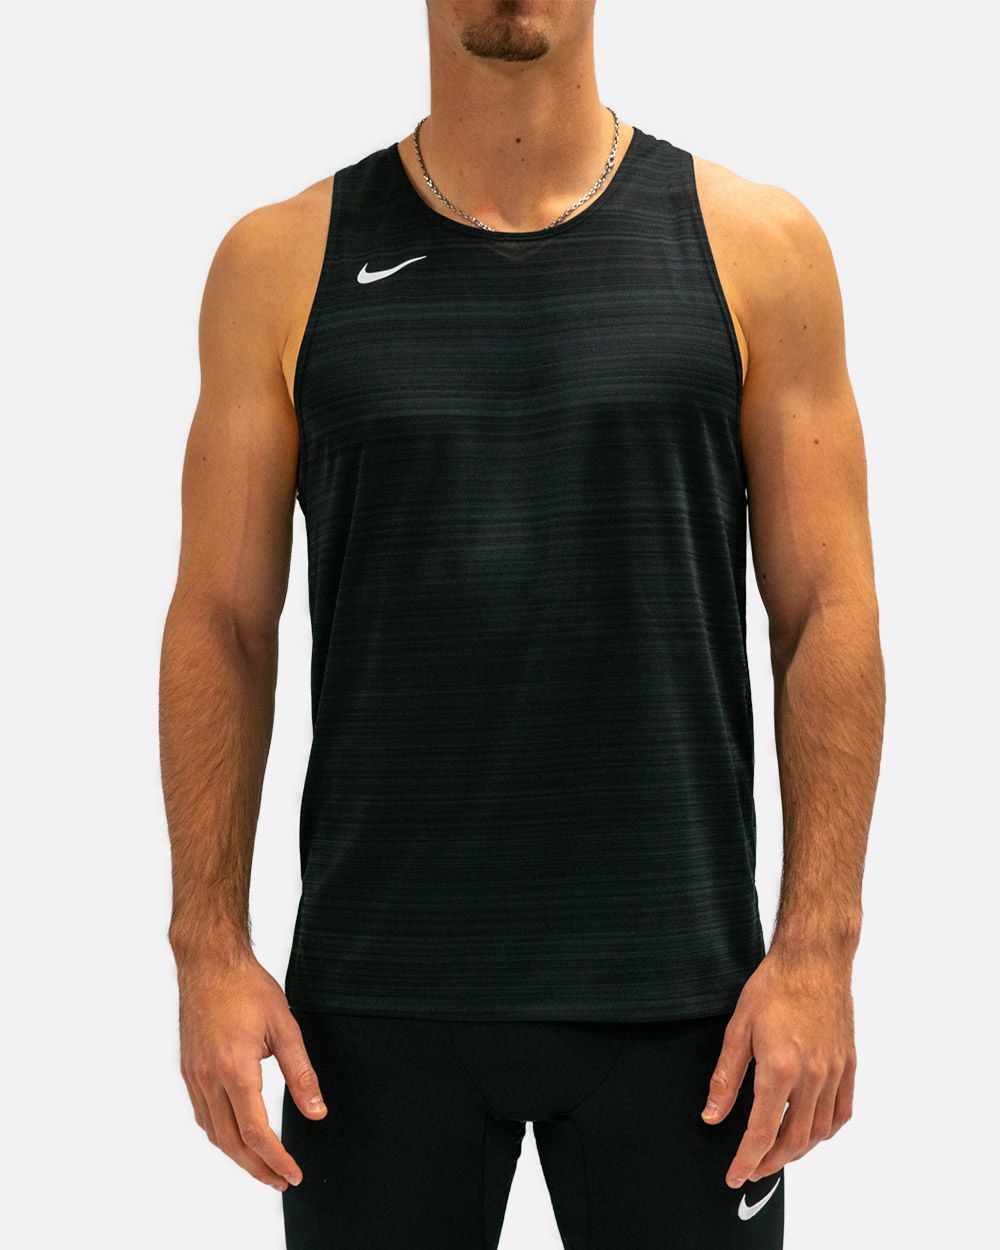 Débardeur Nike Dri-FIT Miler - Nike - Homme - Entretien physique